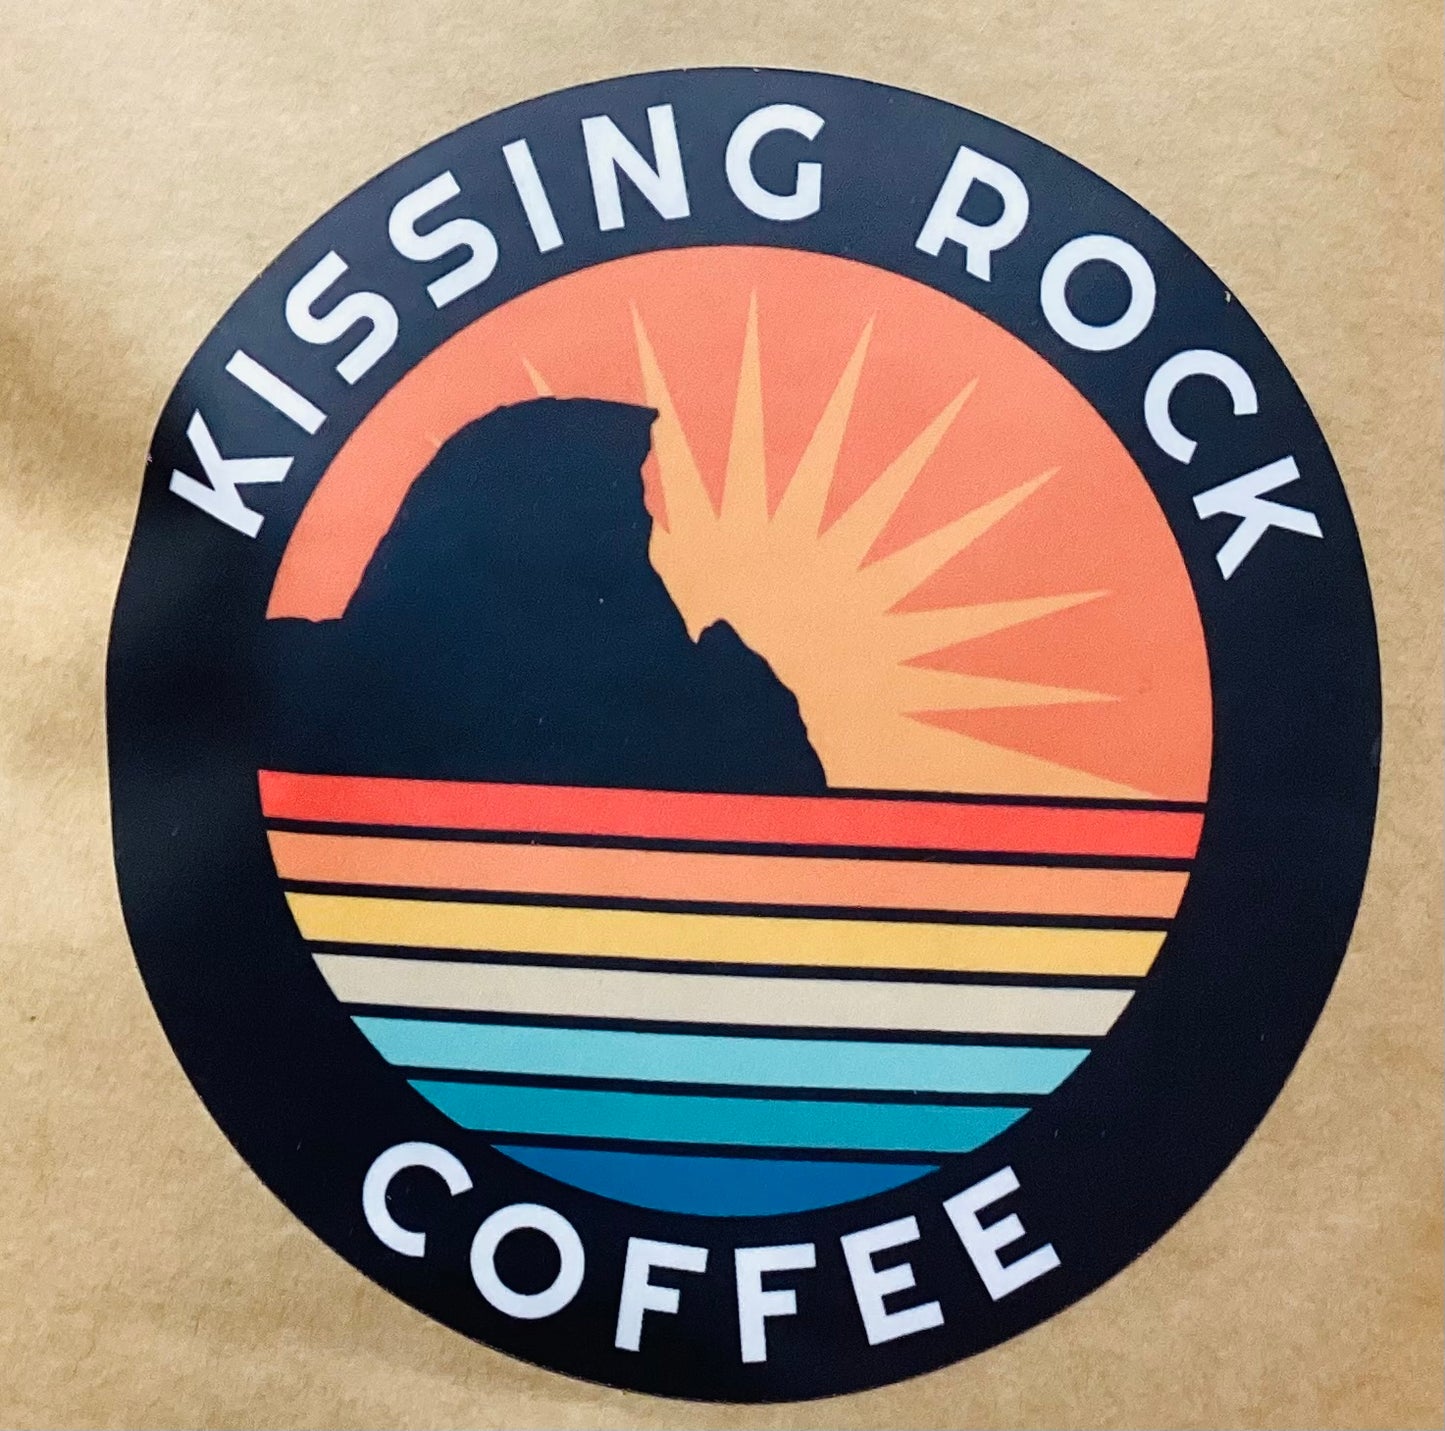 DECAF KISSING ROCK COFFEE DECAF ROAST